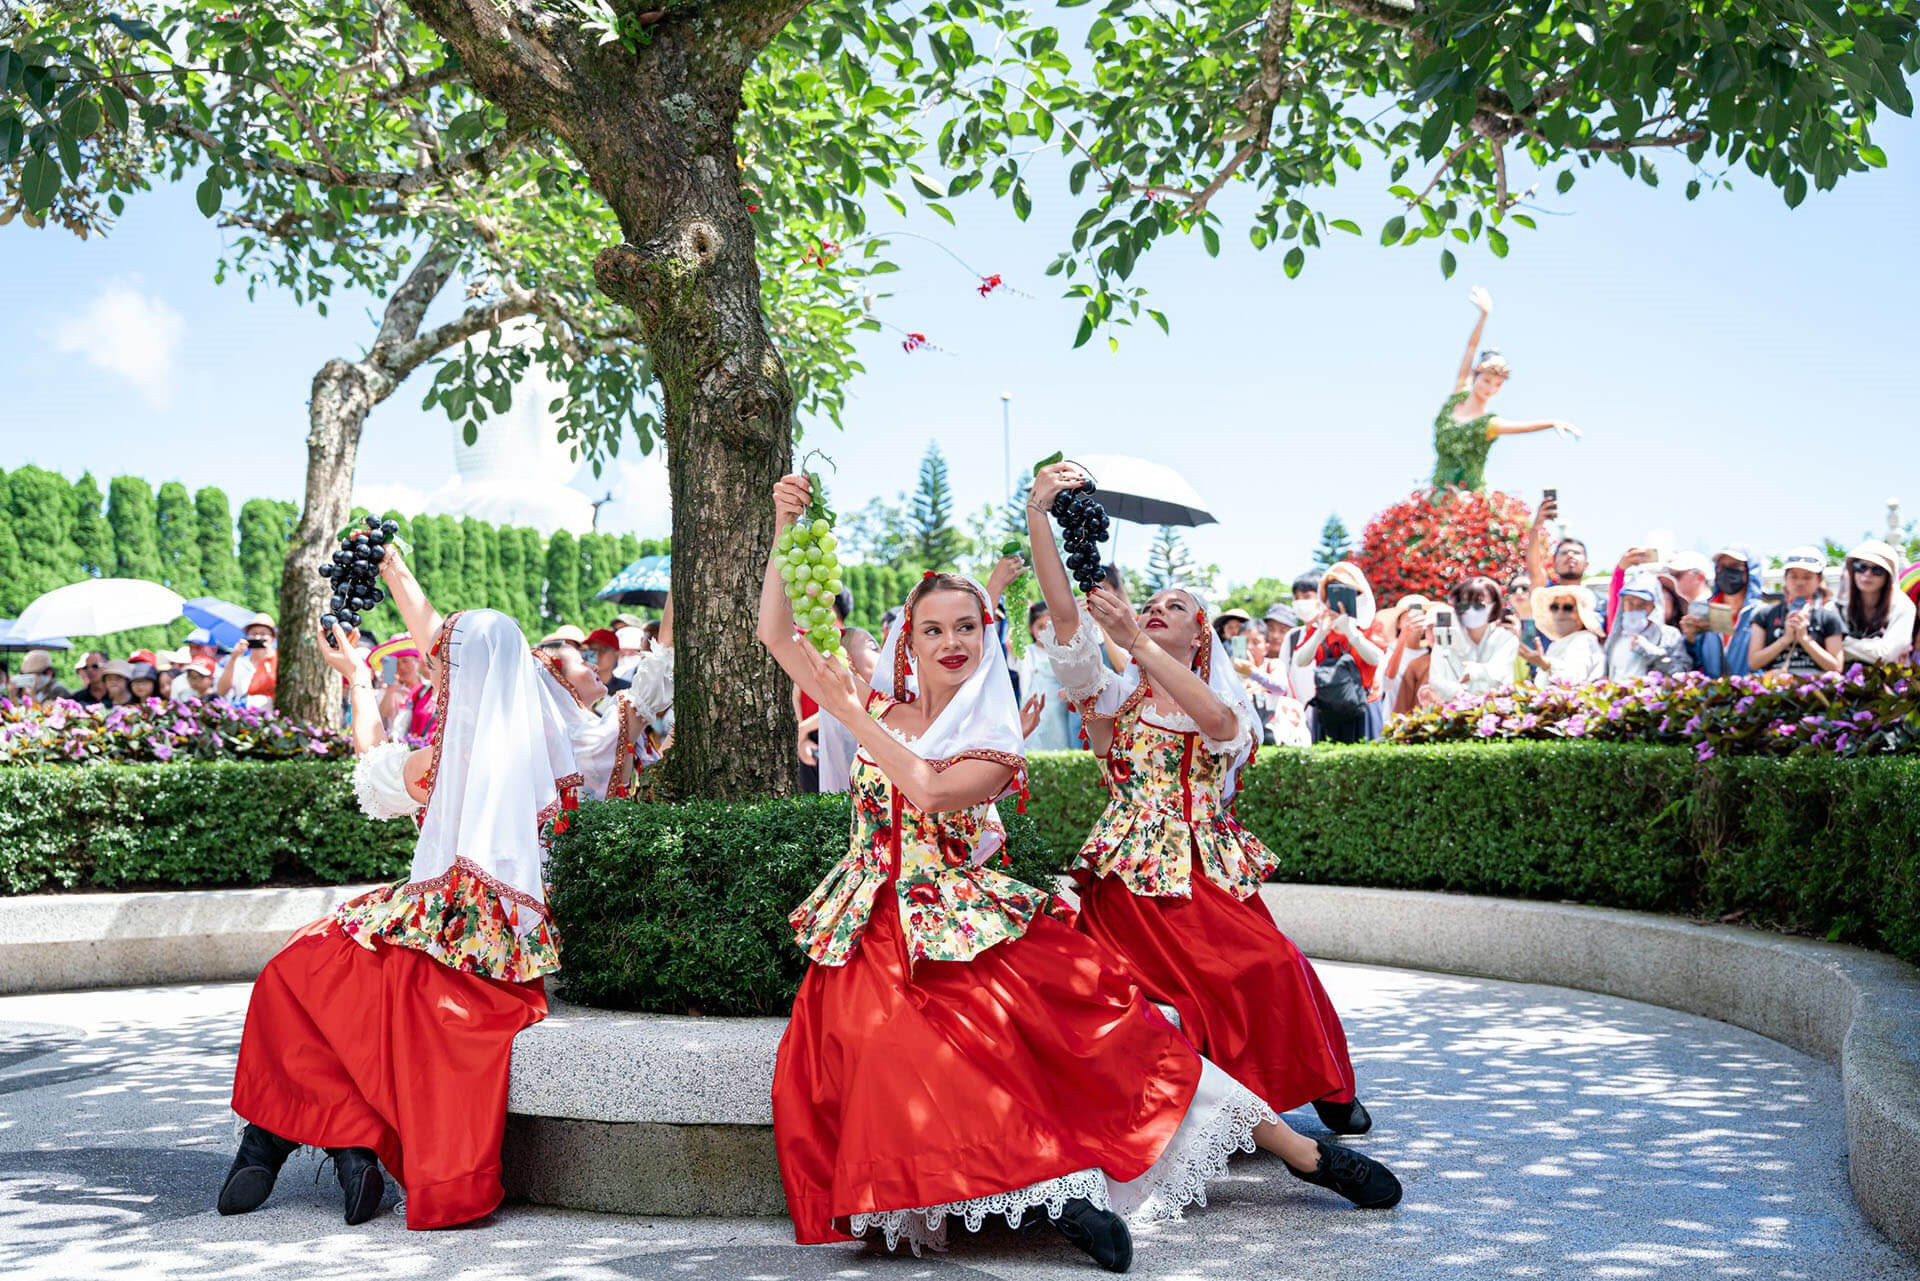 Hơn 150 vũ công trình diễn nghệ thuật phục vụ người dân và du khách tại Bà Nà -núi Chúa. Ảnh Du lịch Đà Nẵng